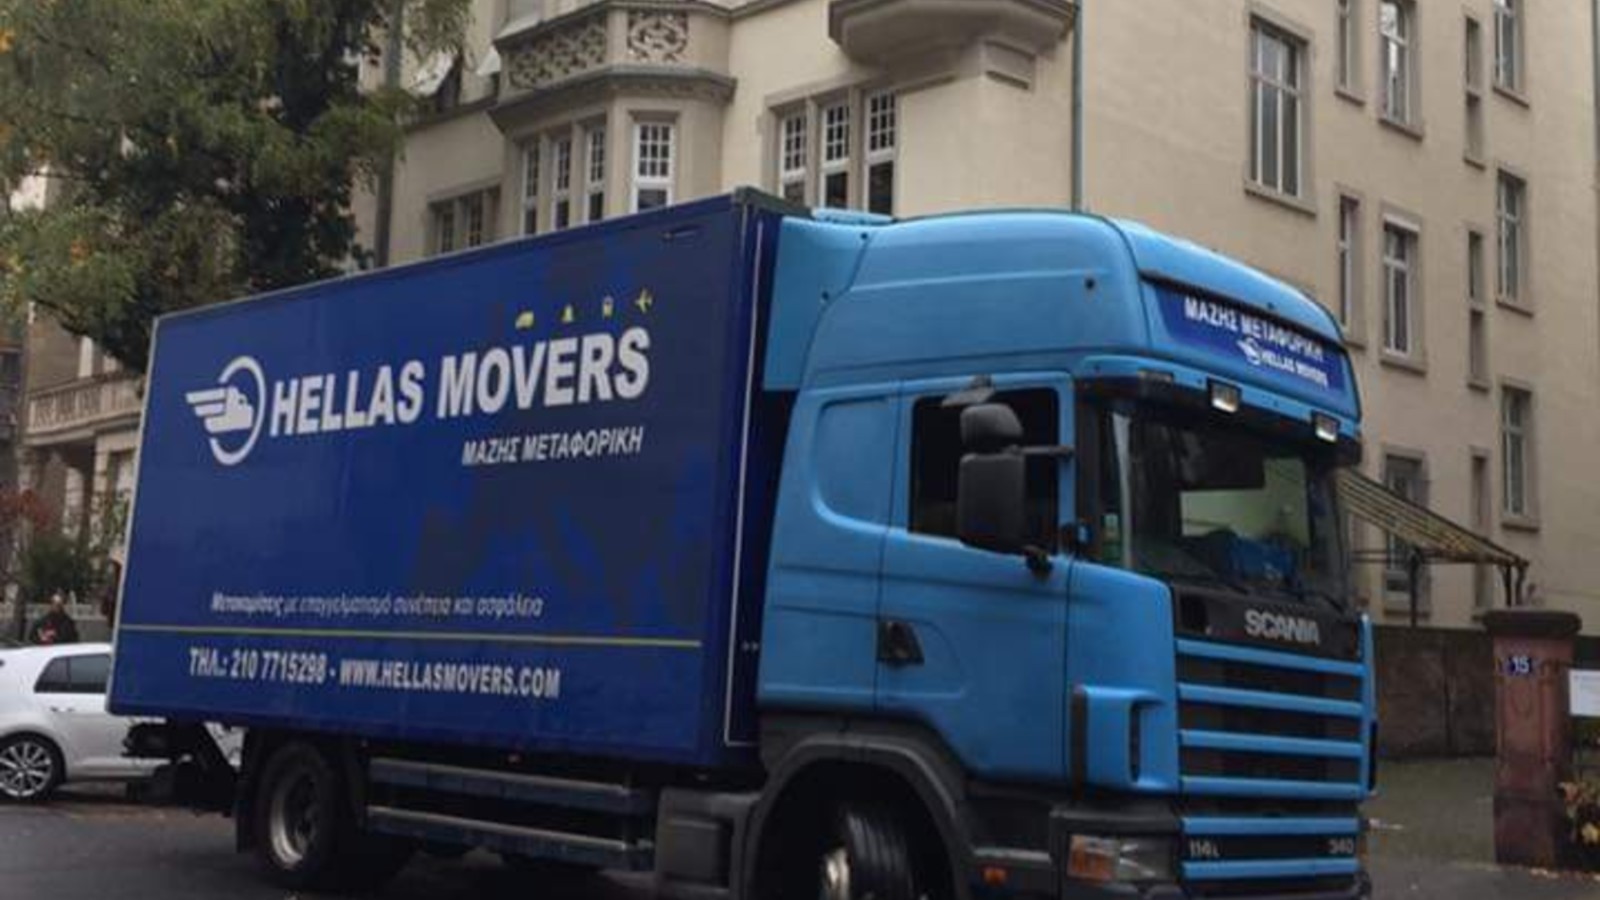 Μετακόμιση στην Ιταλία από Ελλάδα Χριστόφορος Μάζης Μεταφορές Μετακομίσεις Χριστόφορος | Hellas Movers